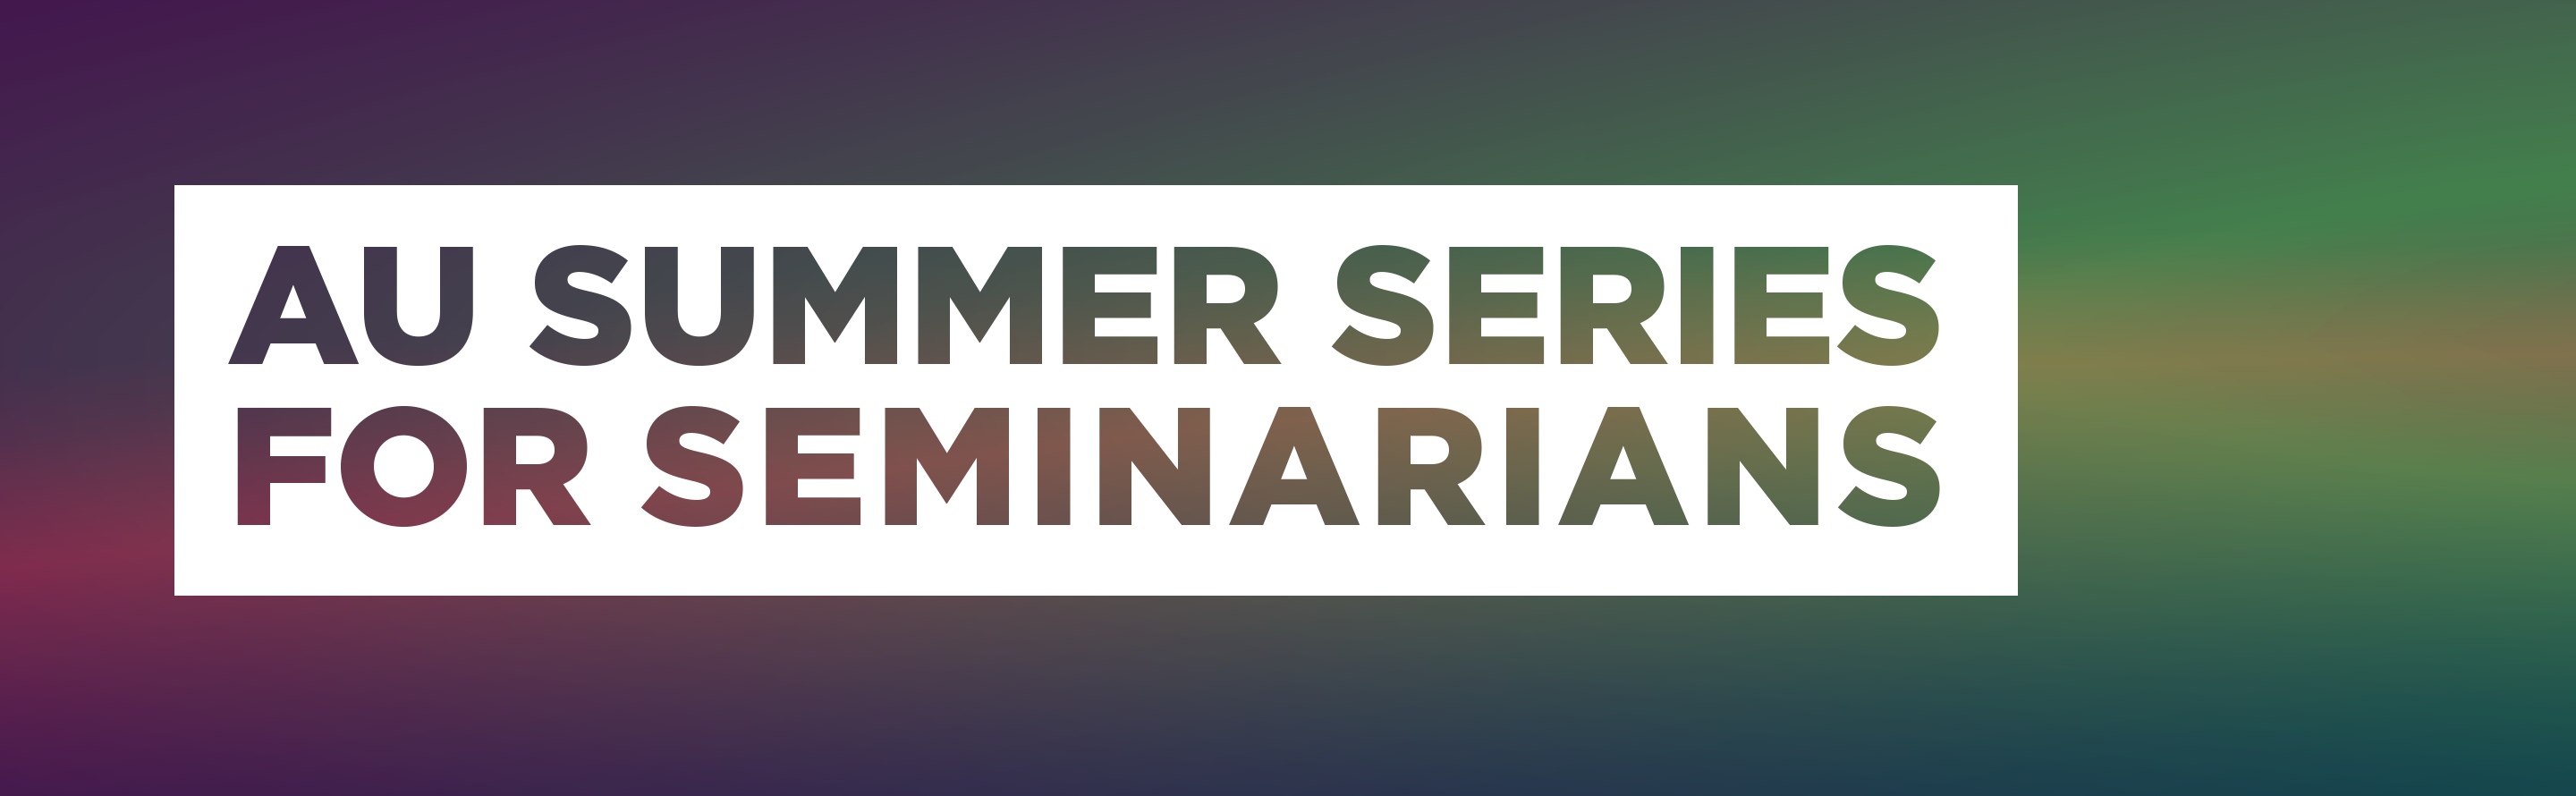 AU Summer Series For Seminarians 2021